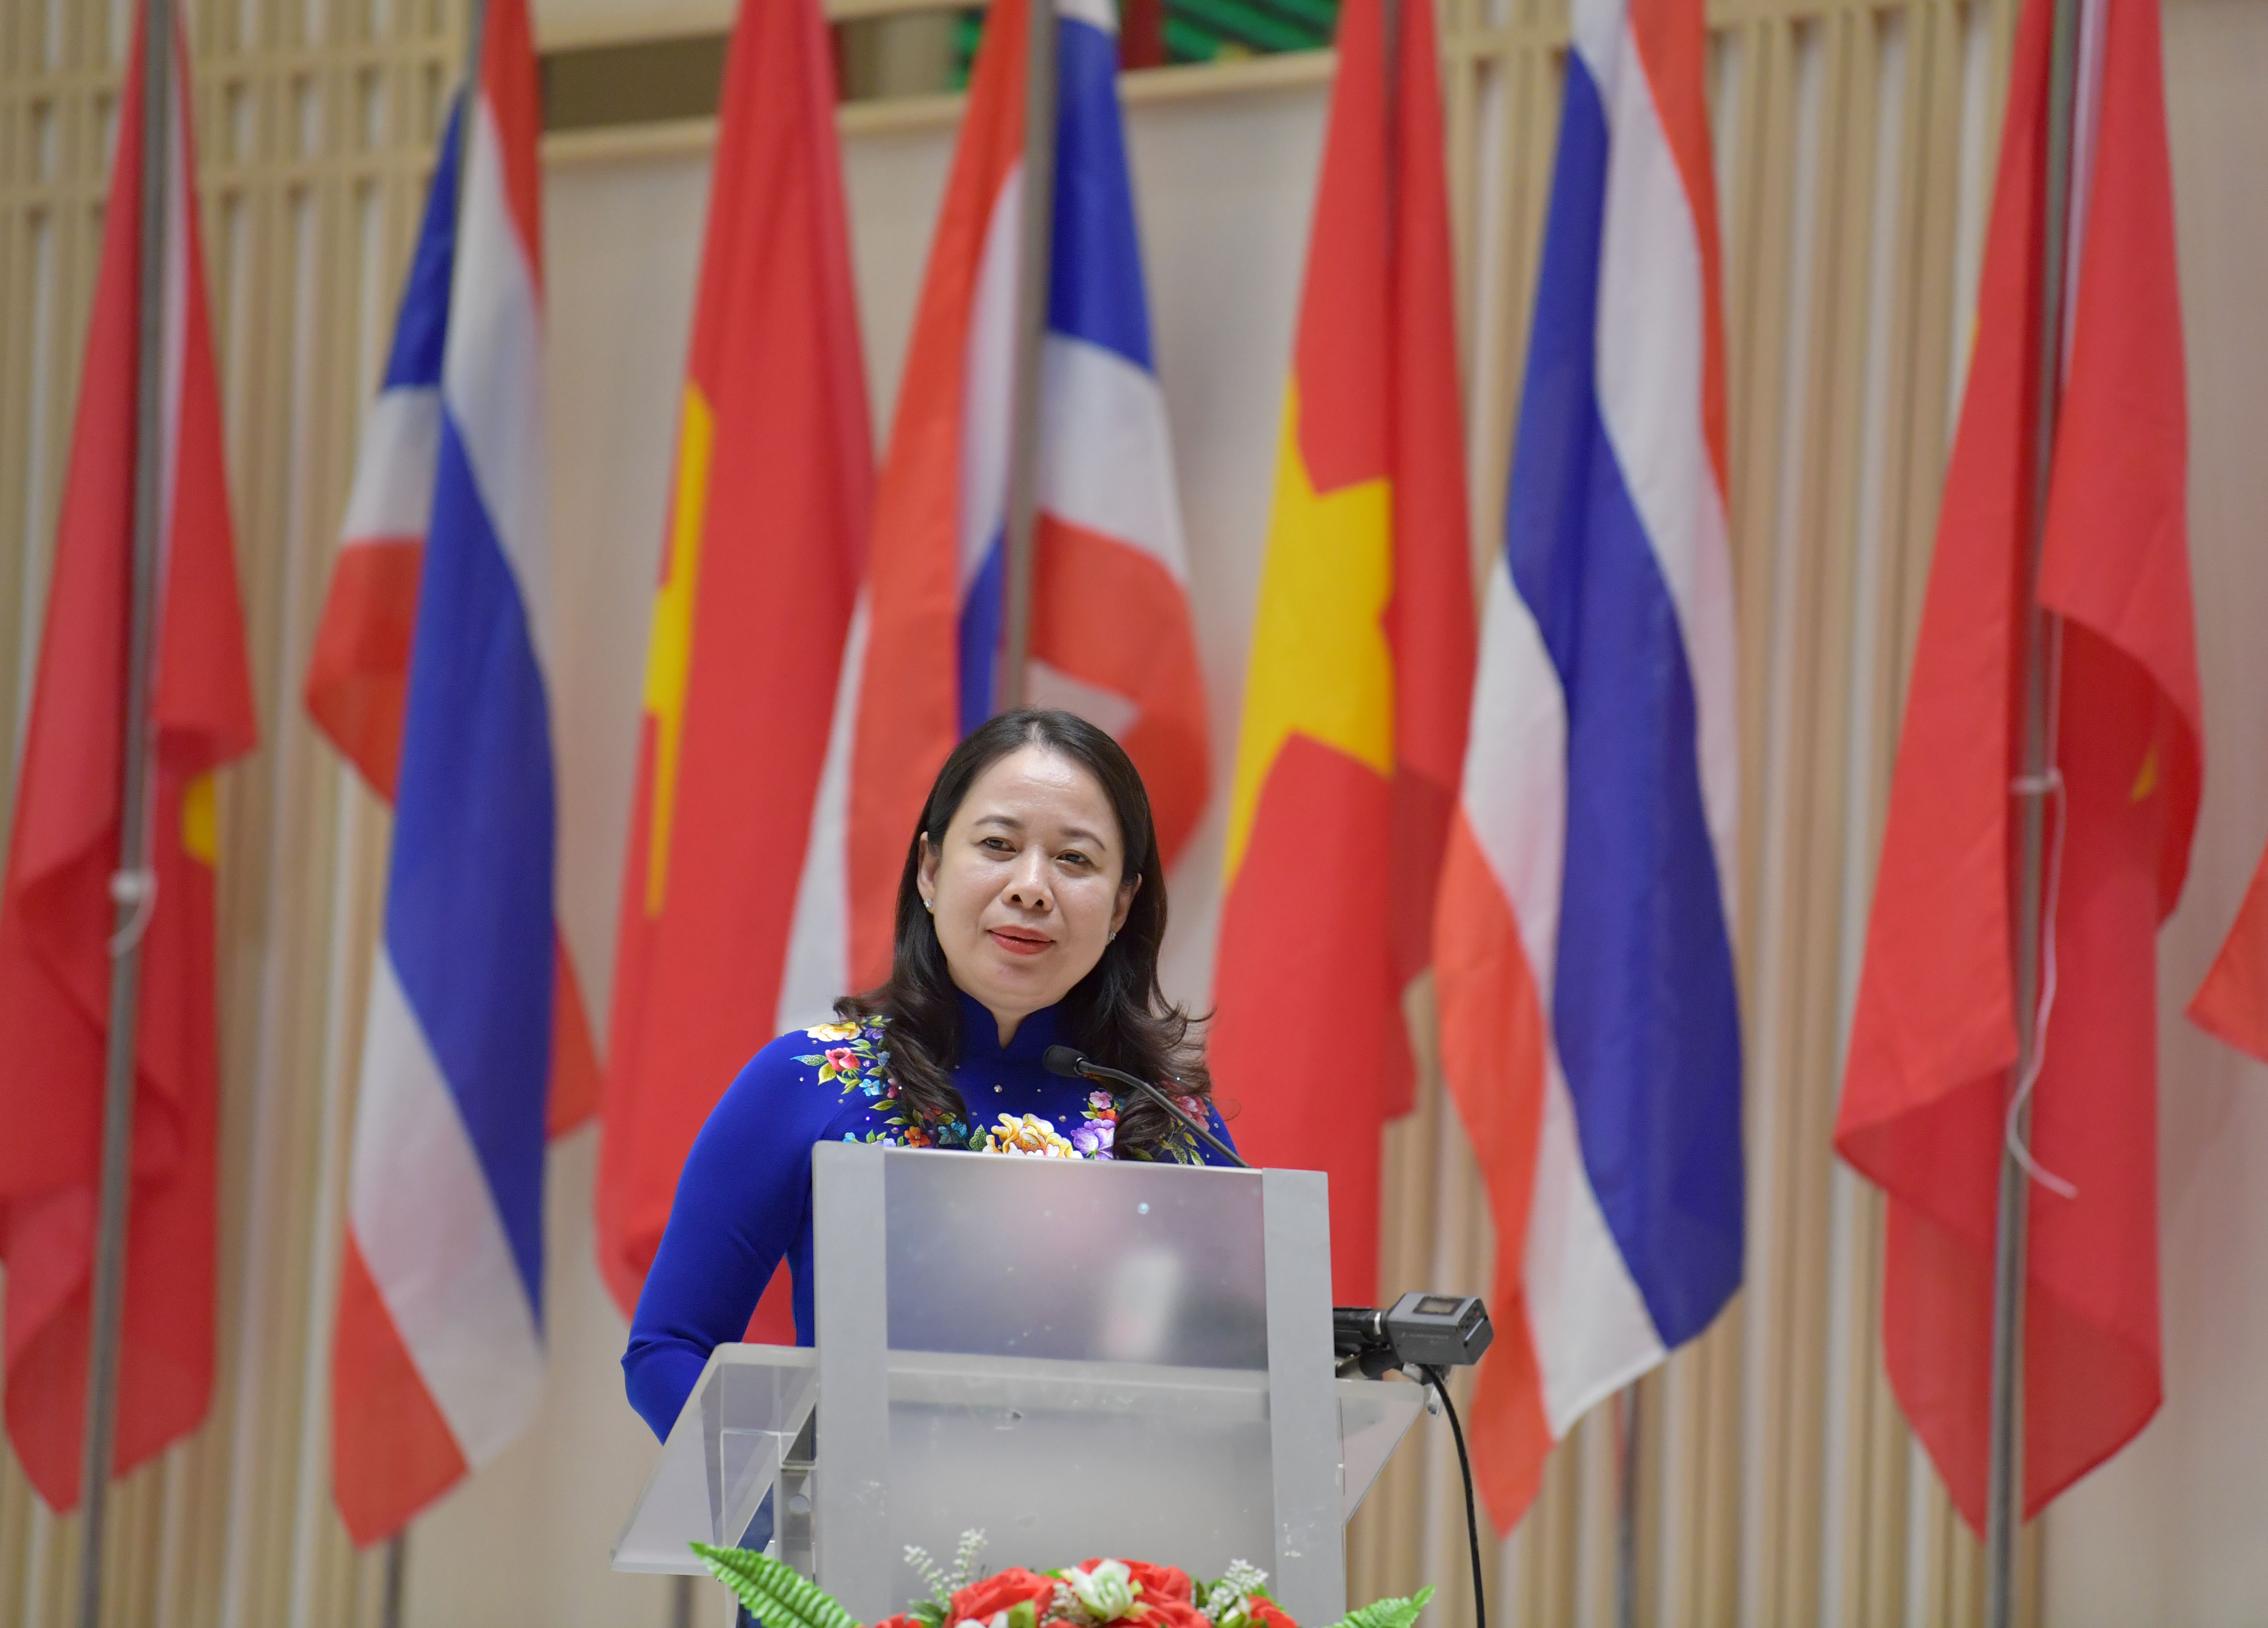 Võ sỹ Ánh Xuân đã góp phần mang lại vinh quang cho đất nước Việt Nam tại các giải đấu Boxing quốc tế. Hãy cùng theo dõi hình ảnh này để tôn vinh thành tích của cô ấy.